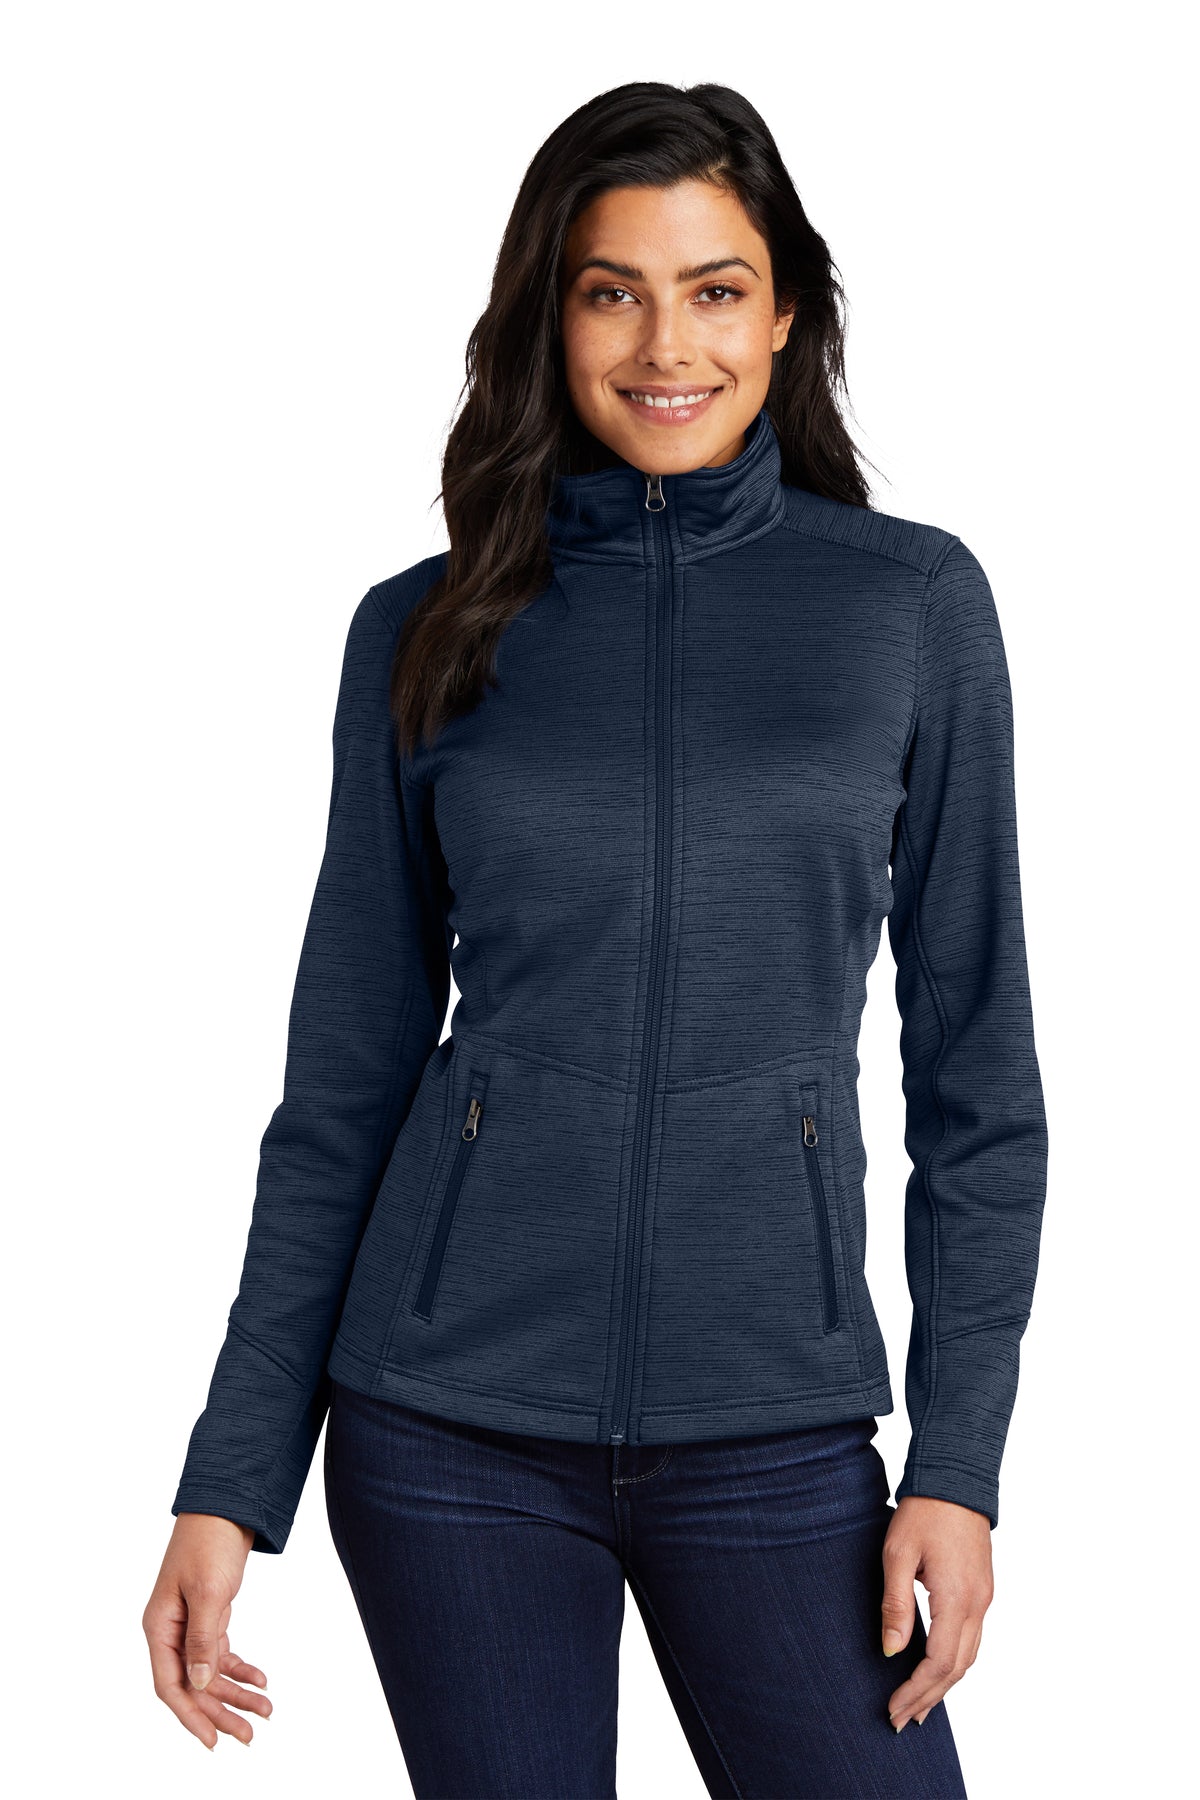 MEDSTAR Port Authority® Women's Digi Stripe Fleece Jacket. L231